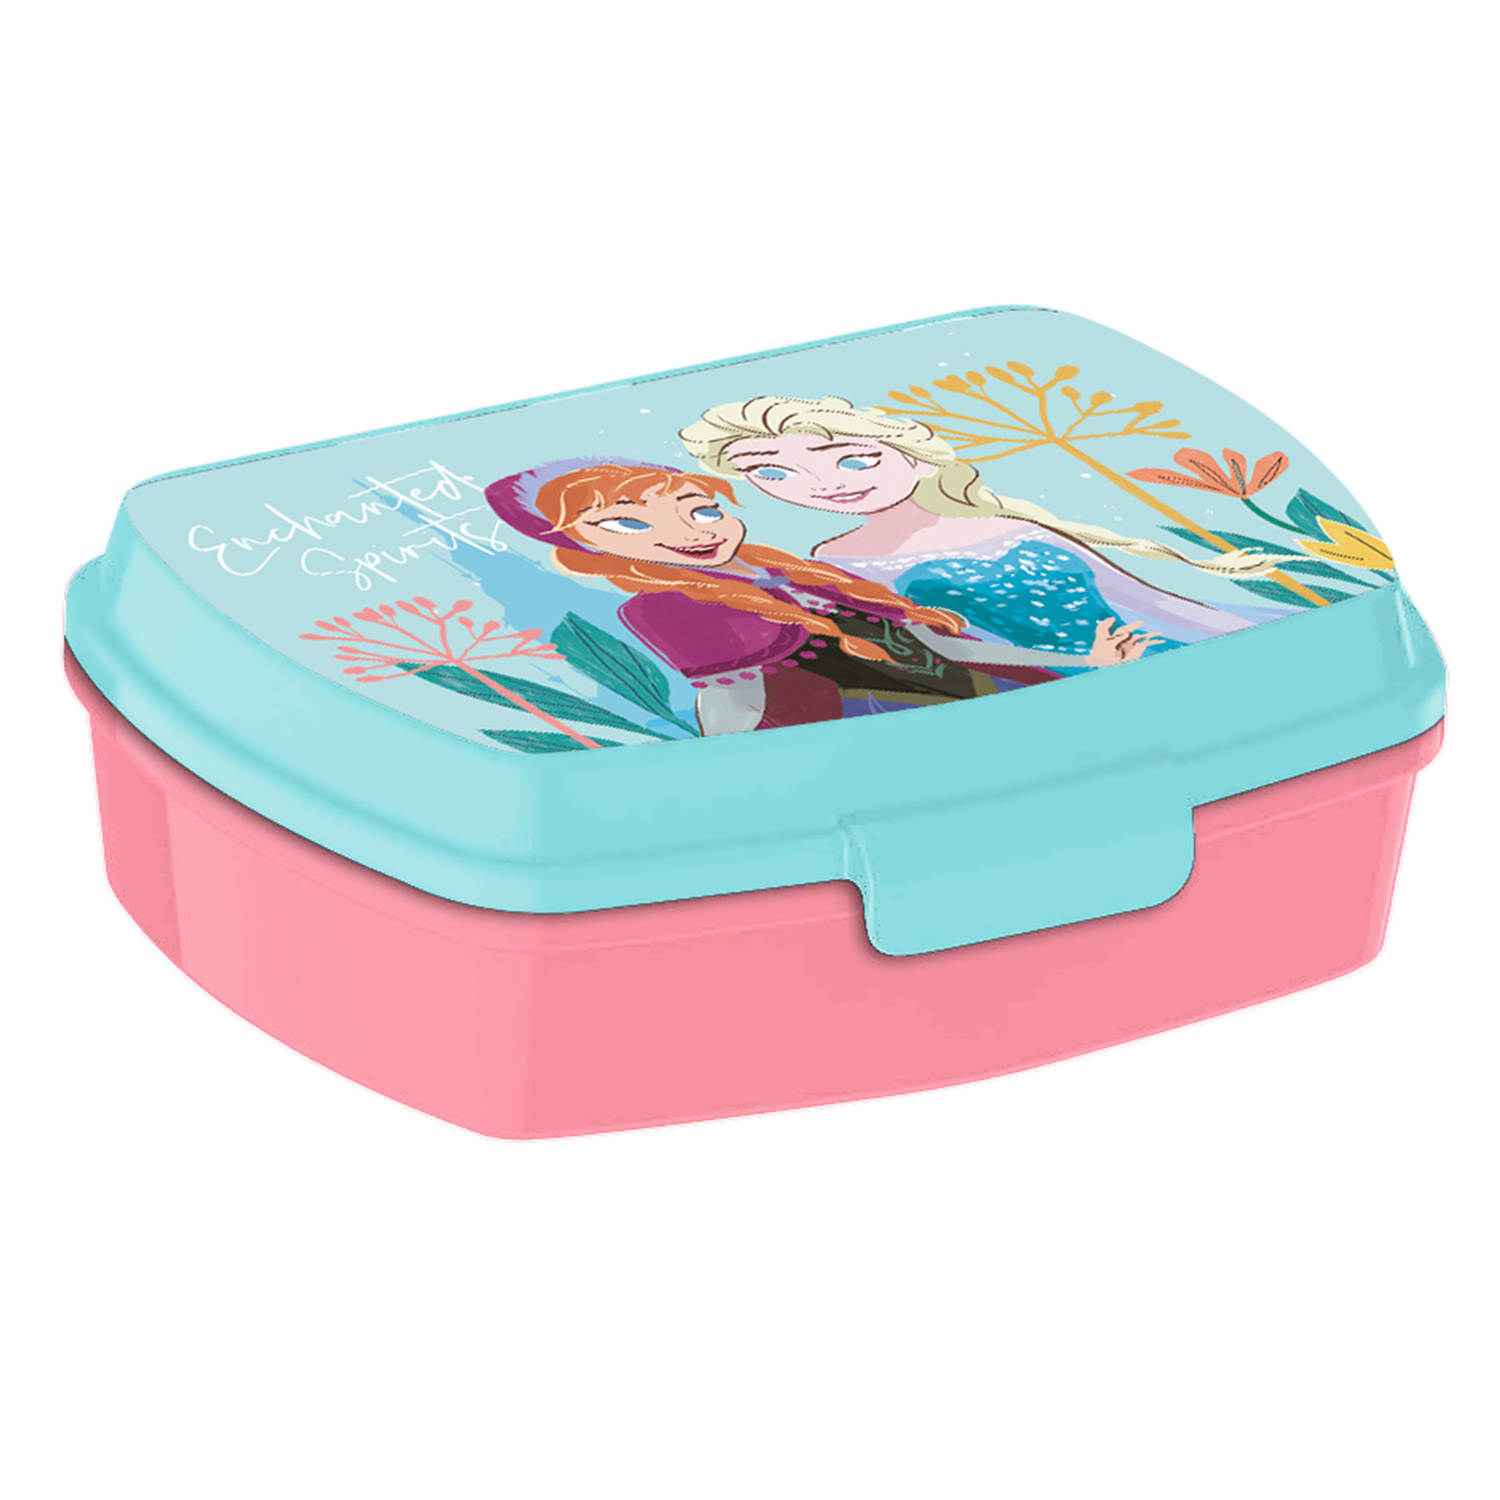 Disney Frozen broodtrommel/lunchbox voor kinderen - blauw - kunststof - 20 x 10 cm